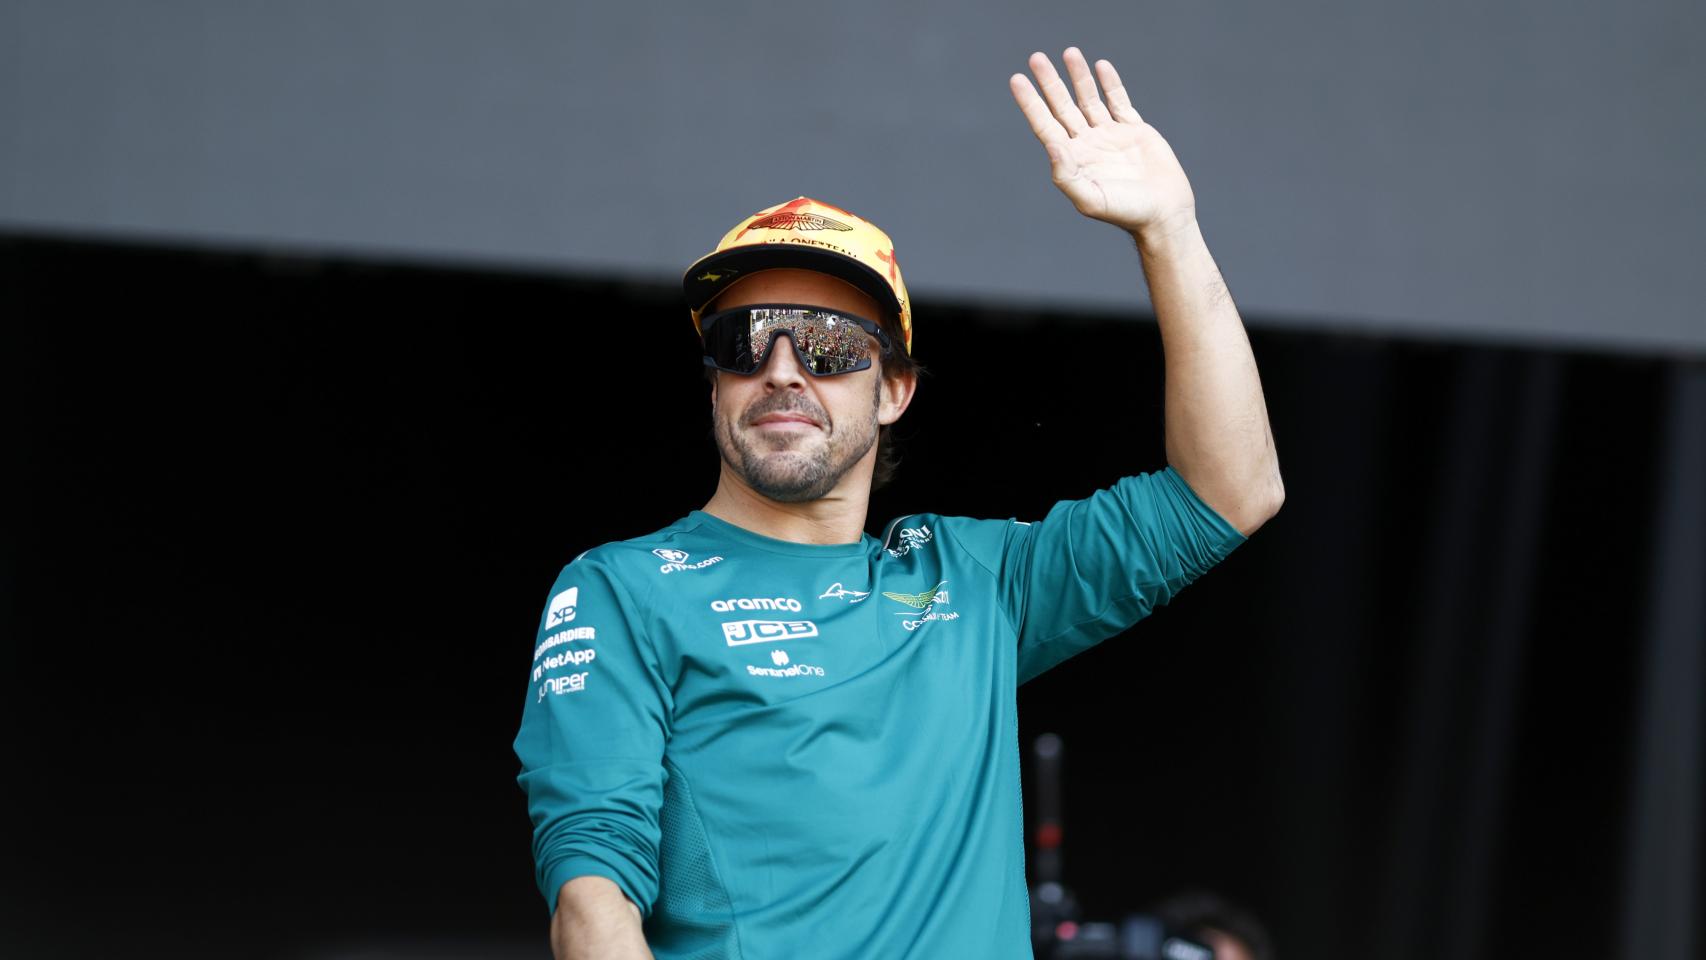 Ya se rindió? Fernando Alonso cree que Red Bull tiene 'el poder' de la F1:  'Tenemos que mirarlos' – El Financiero